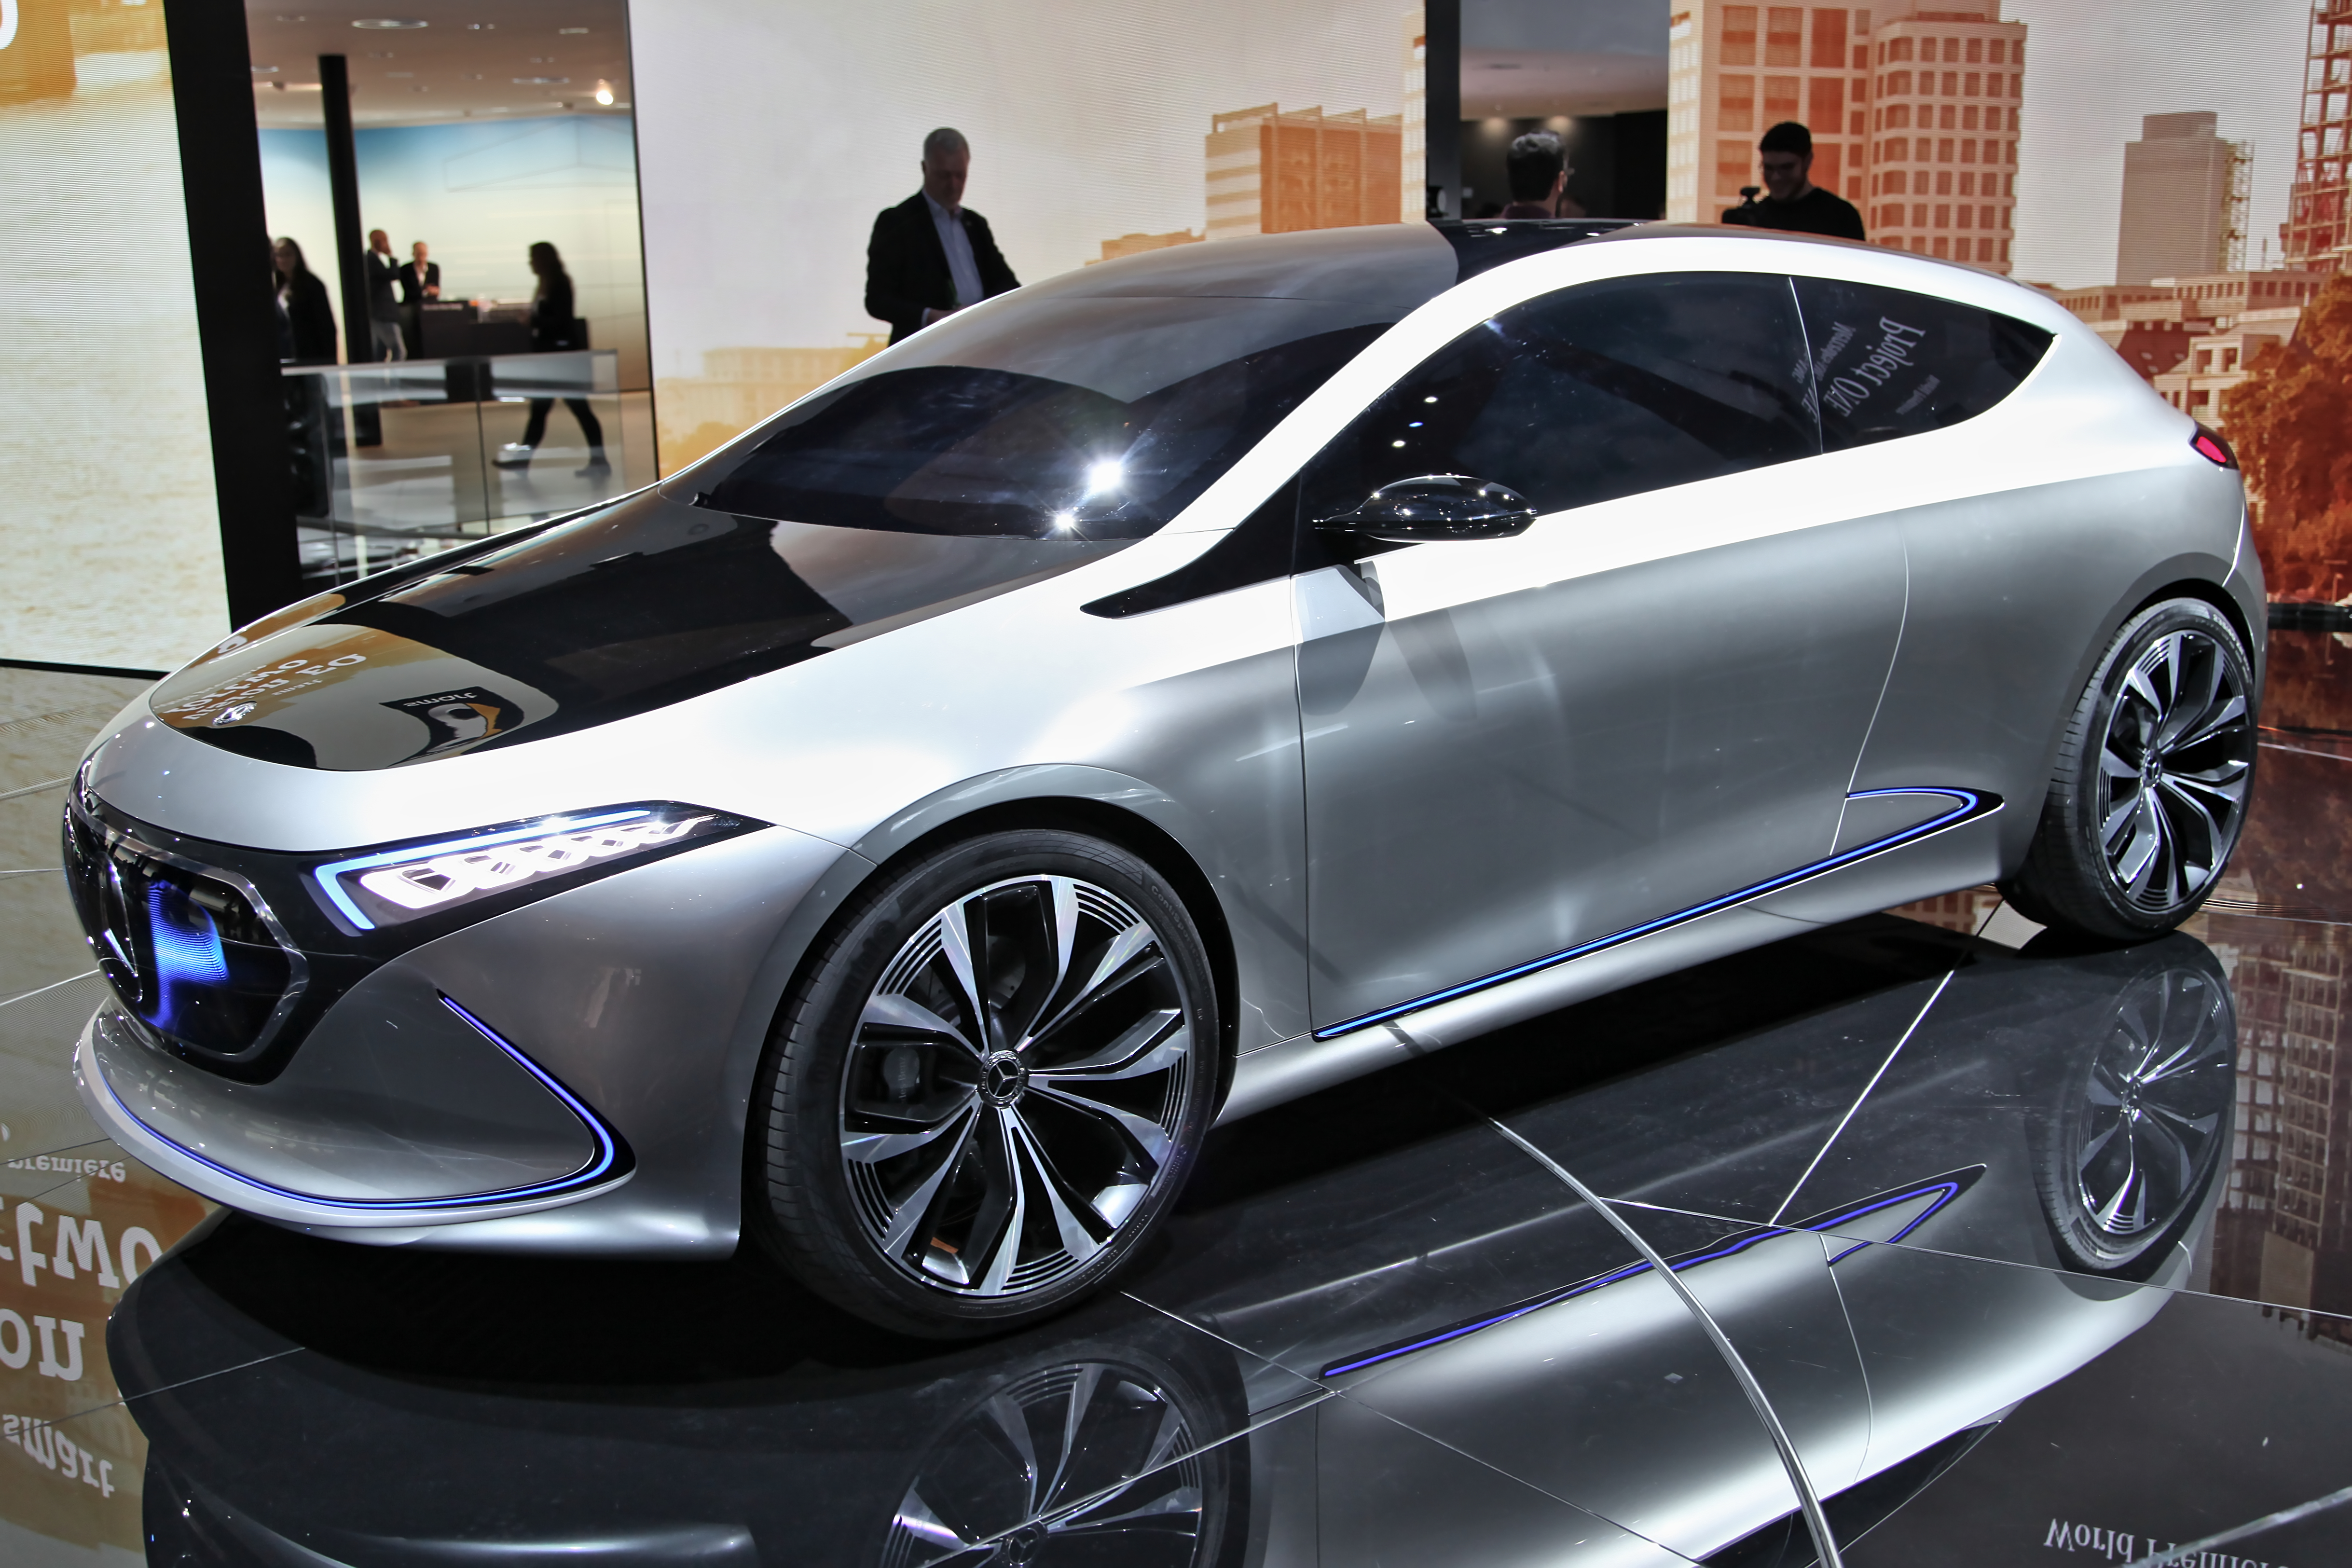 Mercedes-Benz je još 2016. godine na pariškom automobilskom salonu predstavio i model EQA, kompaktni elektromobil koji dijeli neke karakteristike sa SUV-om EQC. Trenutno se ne zna kada će se na tržištu pronaći serijska verzija, no najavljeno je da će Mercedes do 2022. godine imati desetak elektromobila u ponudi, u koje spada i EQA. U najavi koncepta naveden je domet od 400 kilometara, s baterijskim kapacitetom od 60 kWh. Čini se dakle, da je EQA zamišljen više kao gradski automobil, nalik A-klasi.